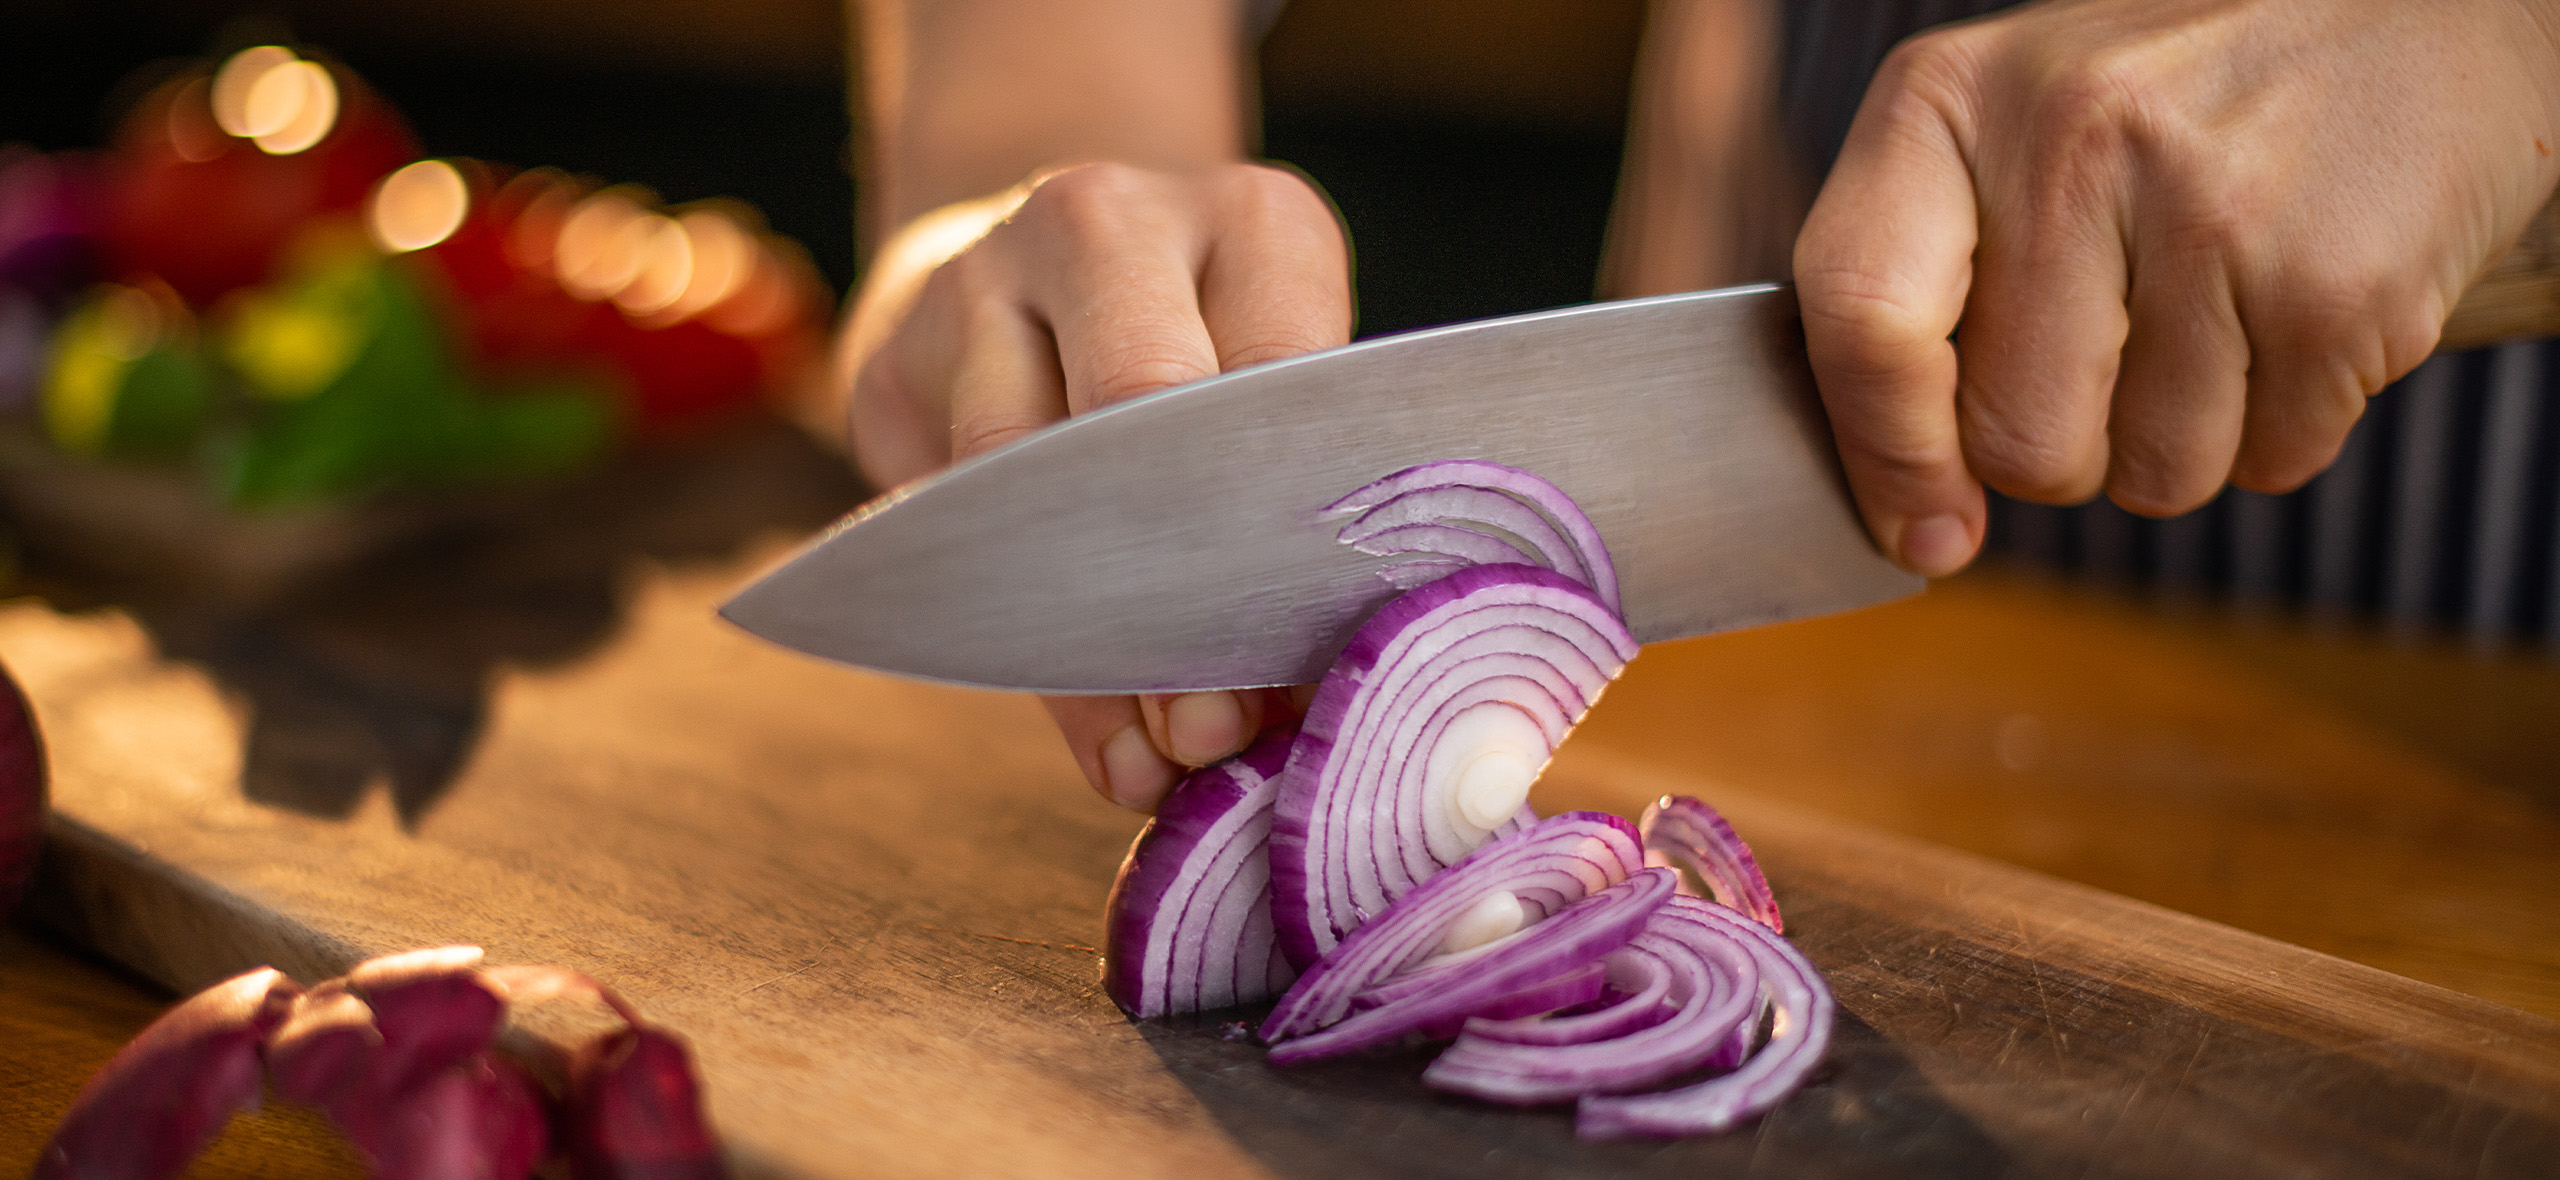 Как правильно резать картошку, лук и другие овощи: простые техники и инструменты